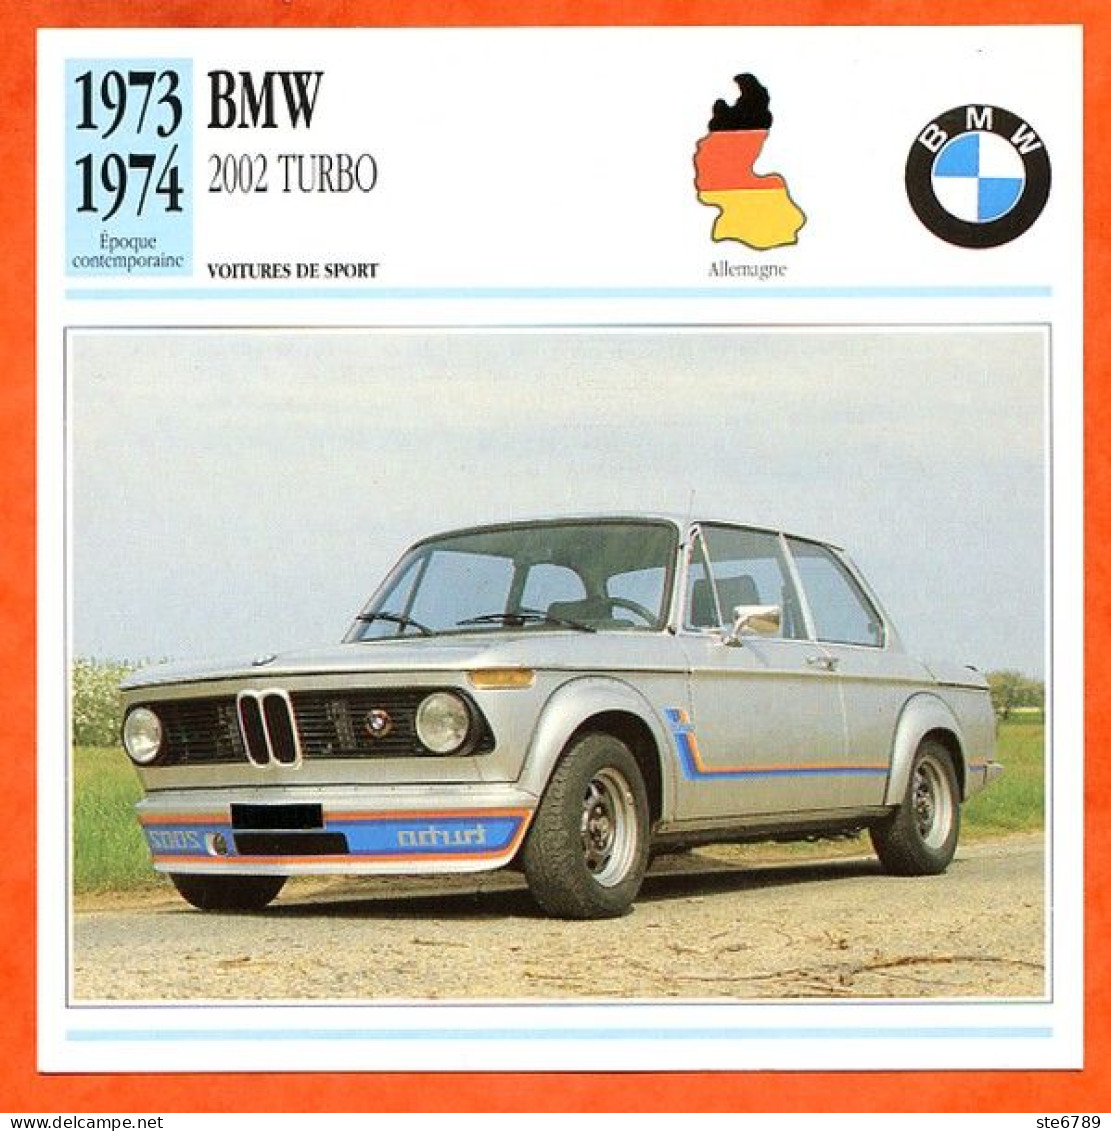 BMW 2002 TURBO 1973 Voiture De Sport Allemagne Fiche Technique Automobile - Automobili